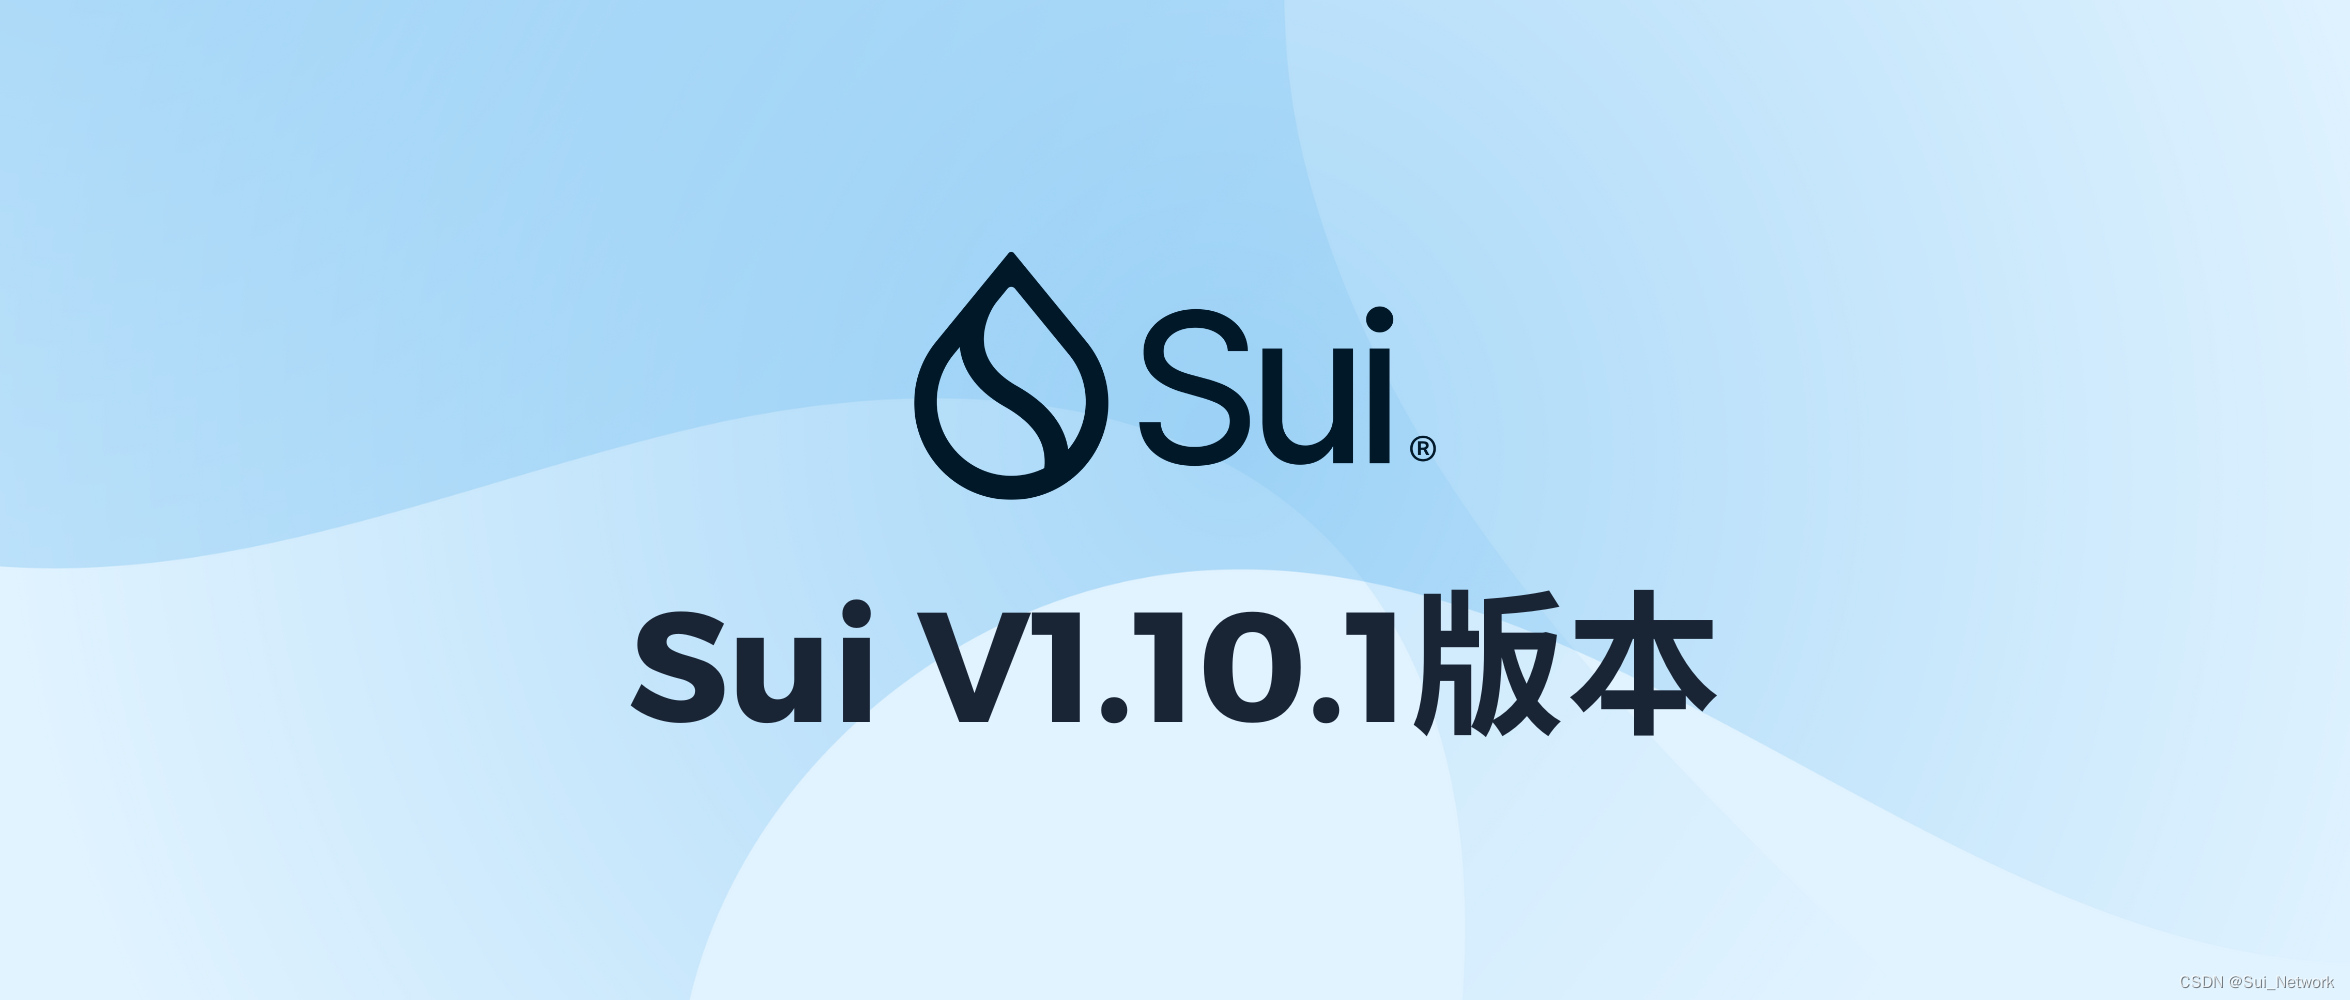 Sui主网升级至V1.10.1版本